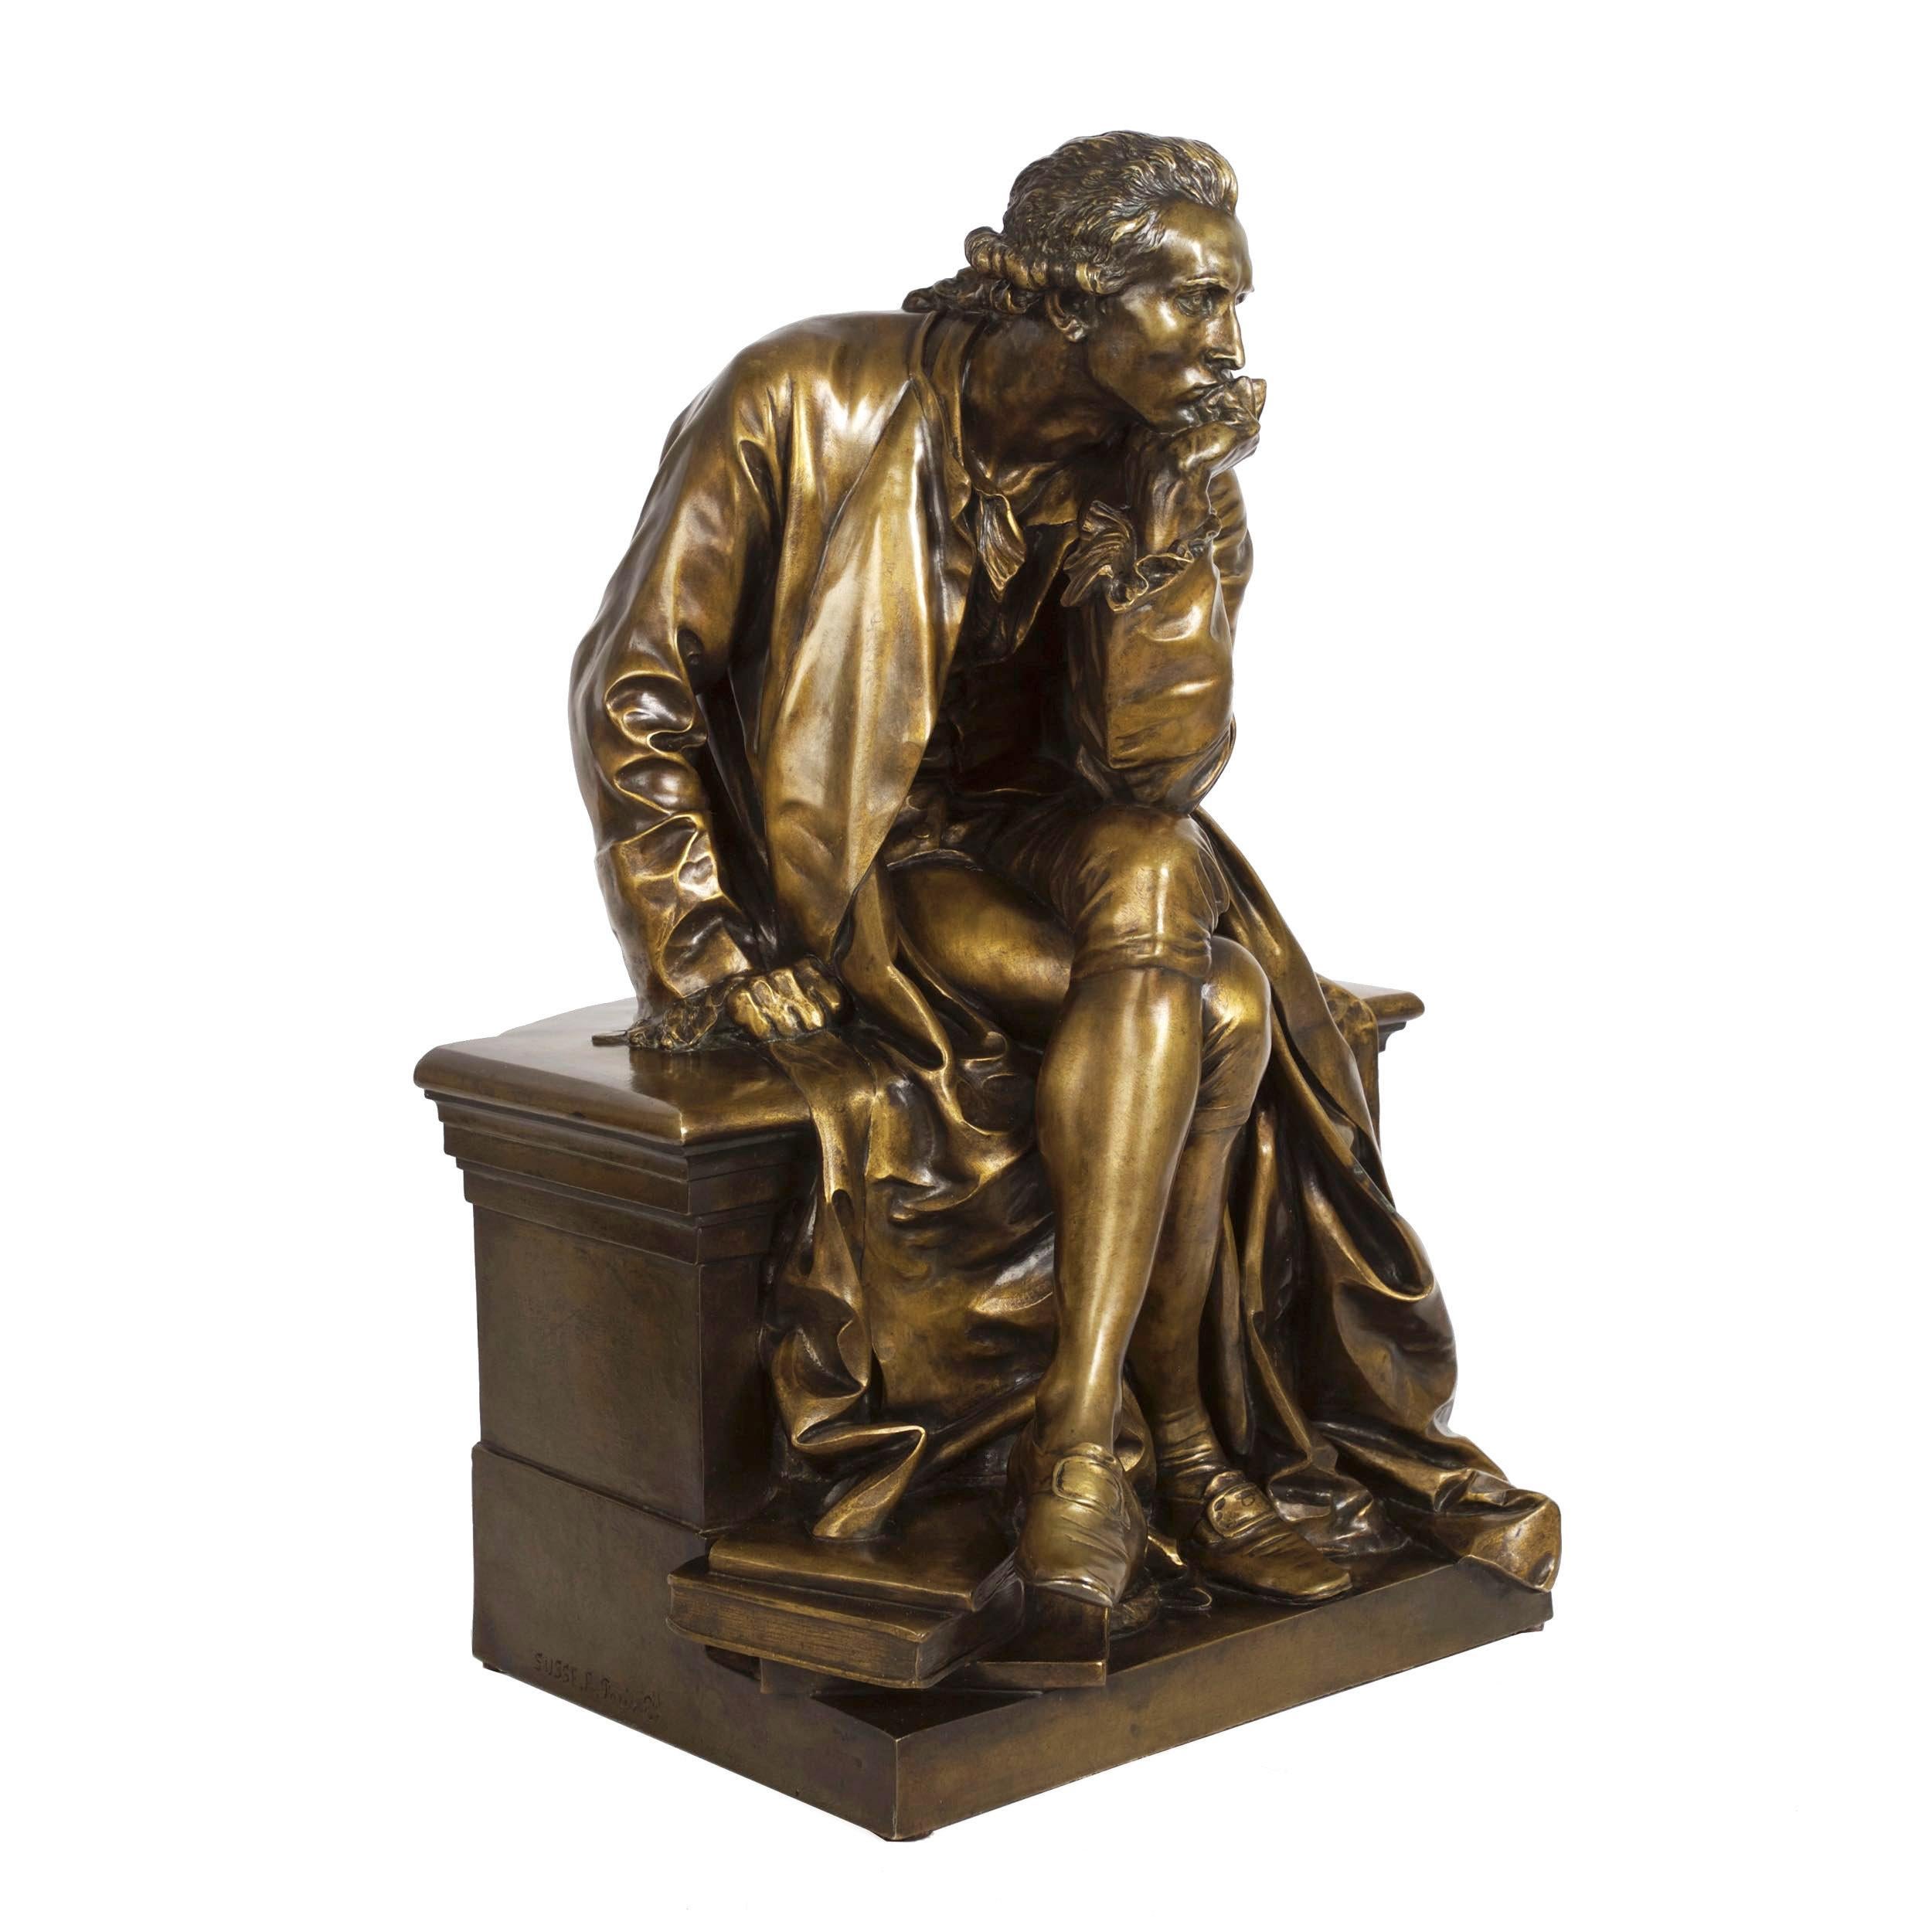 Romantic Bronze Sculpture of “Antoine Laurent Lavoisier” by Aime Jules Dalou